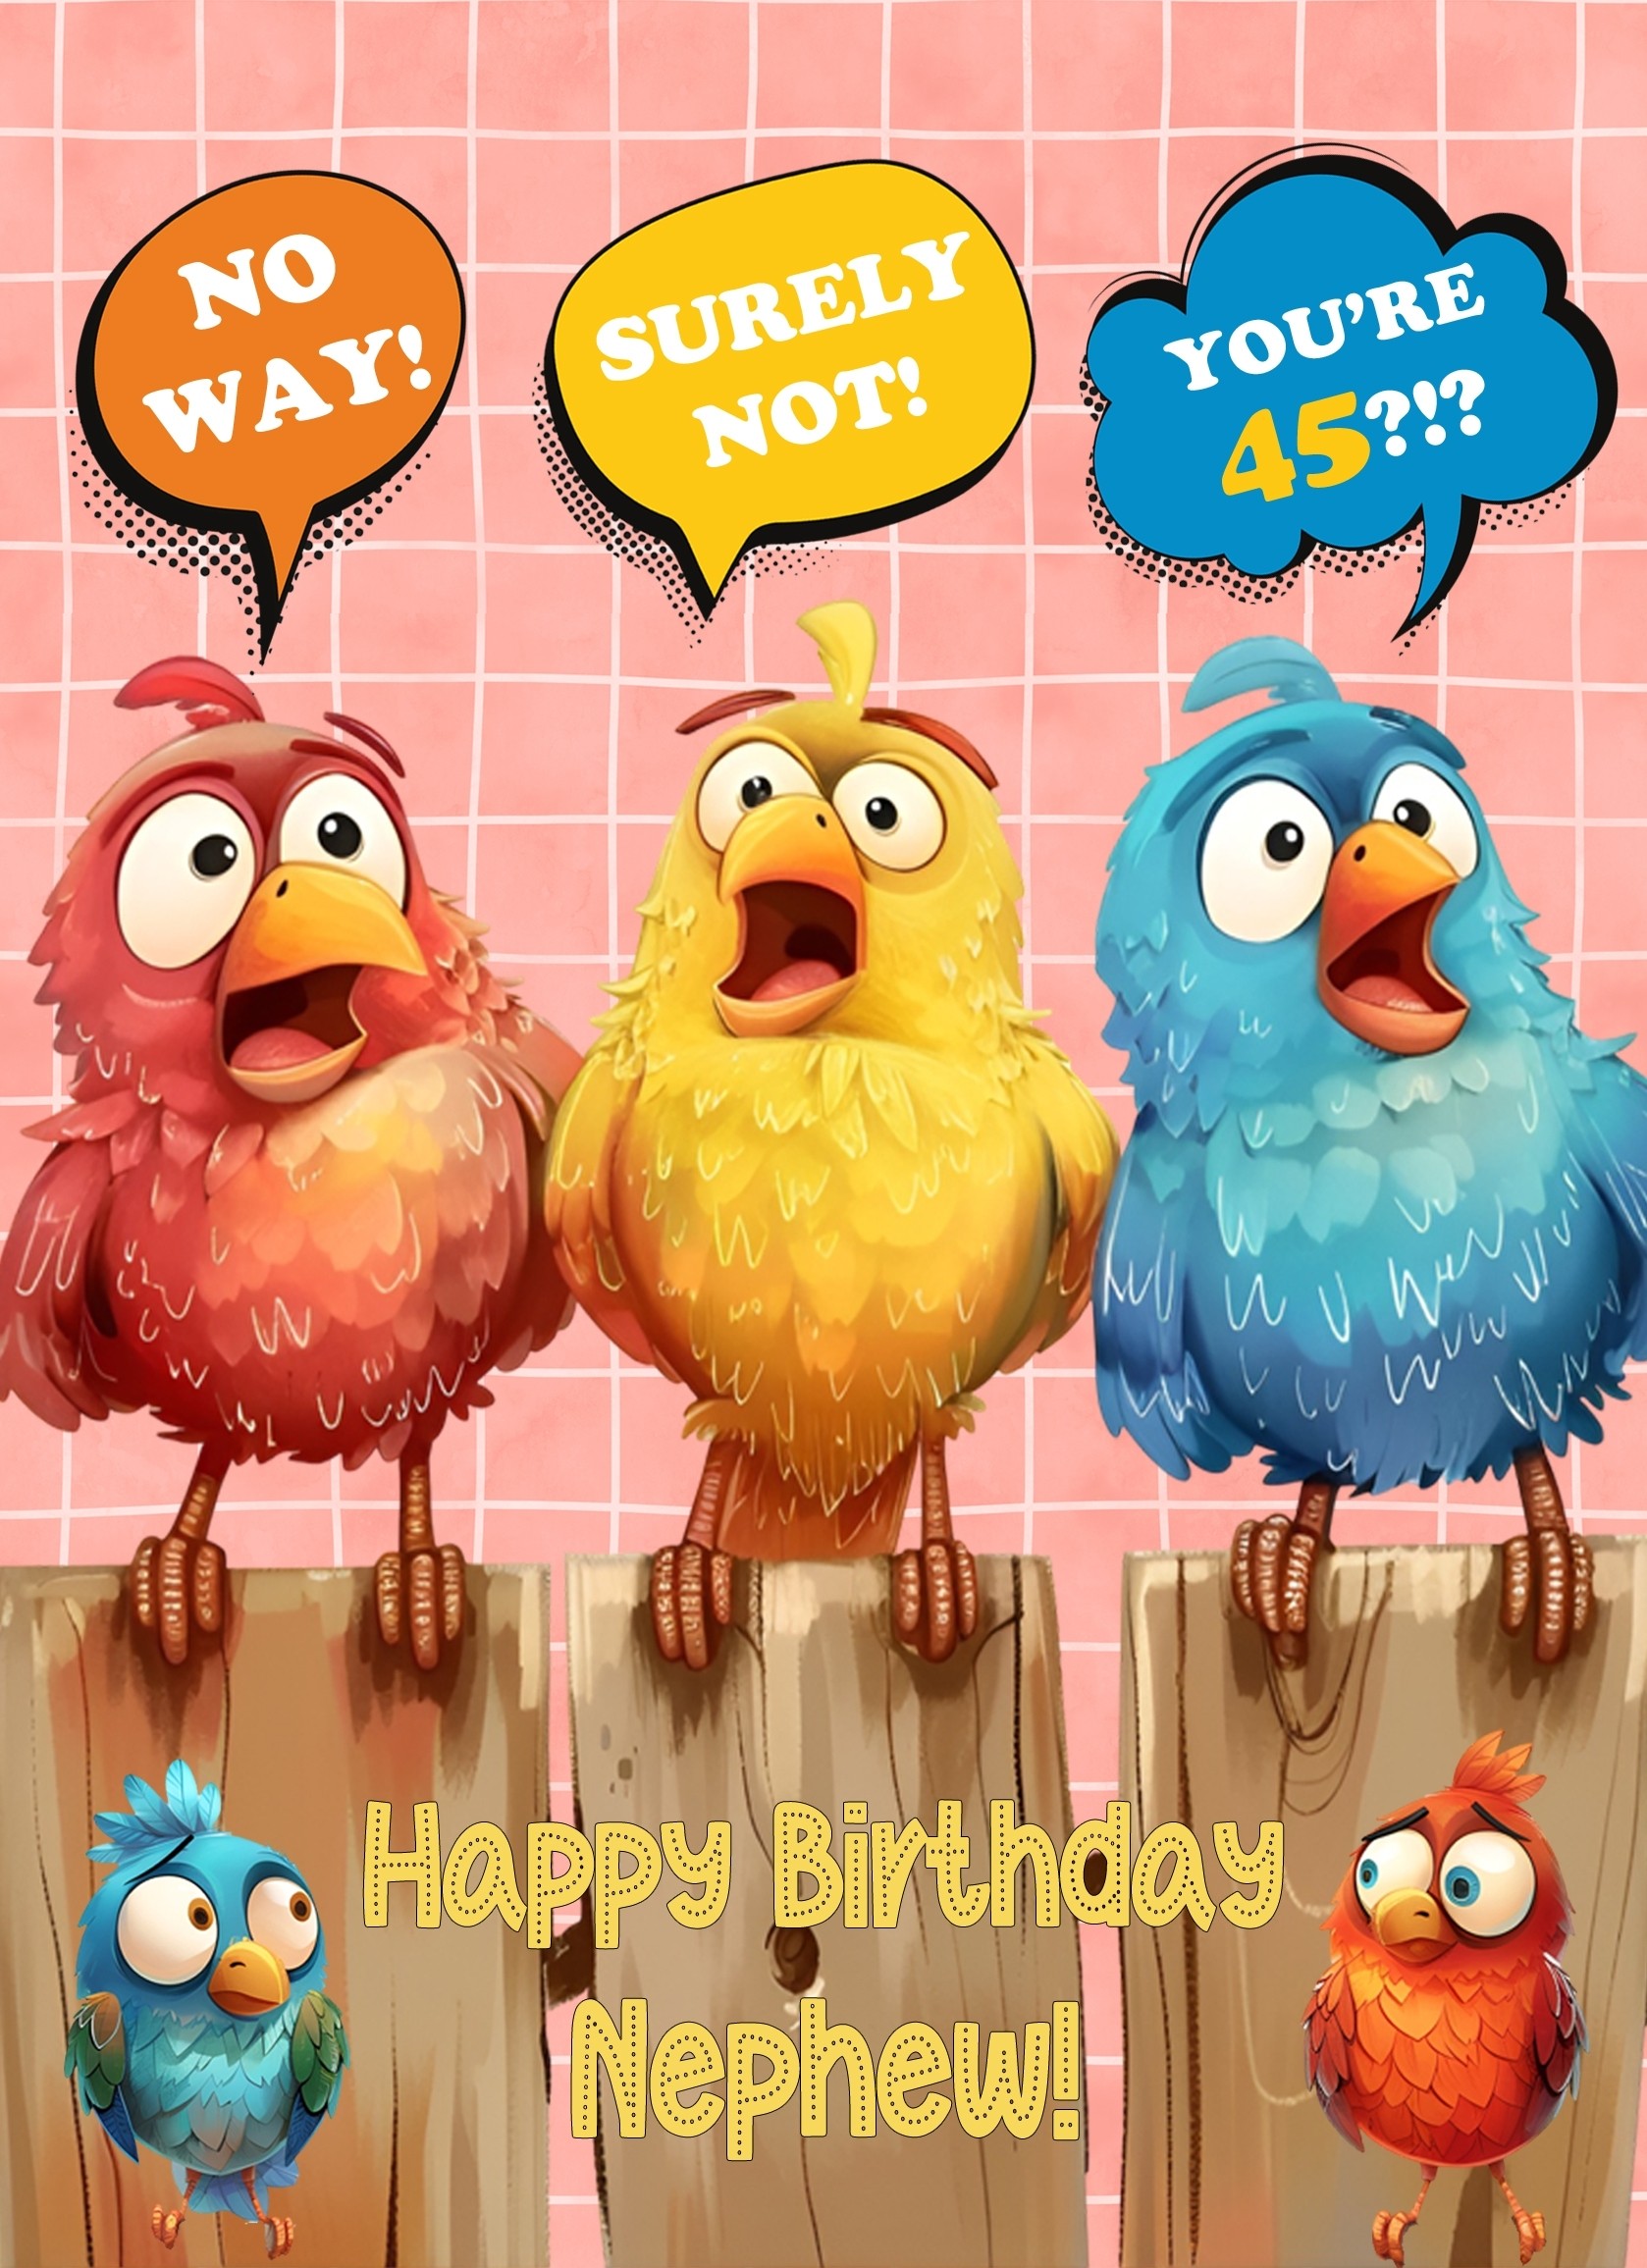 Nephew 45th Birthday Card (Funny Birds Surprised)